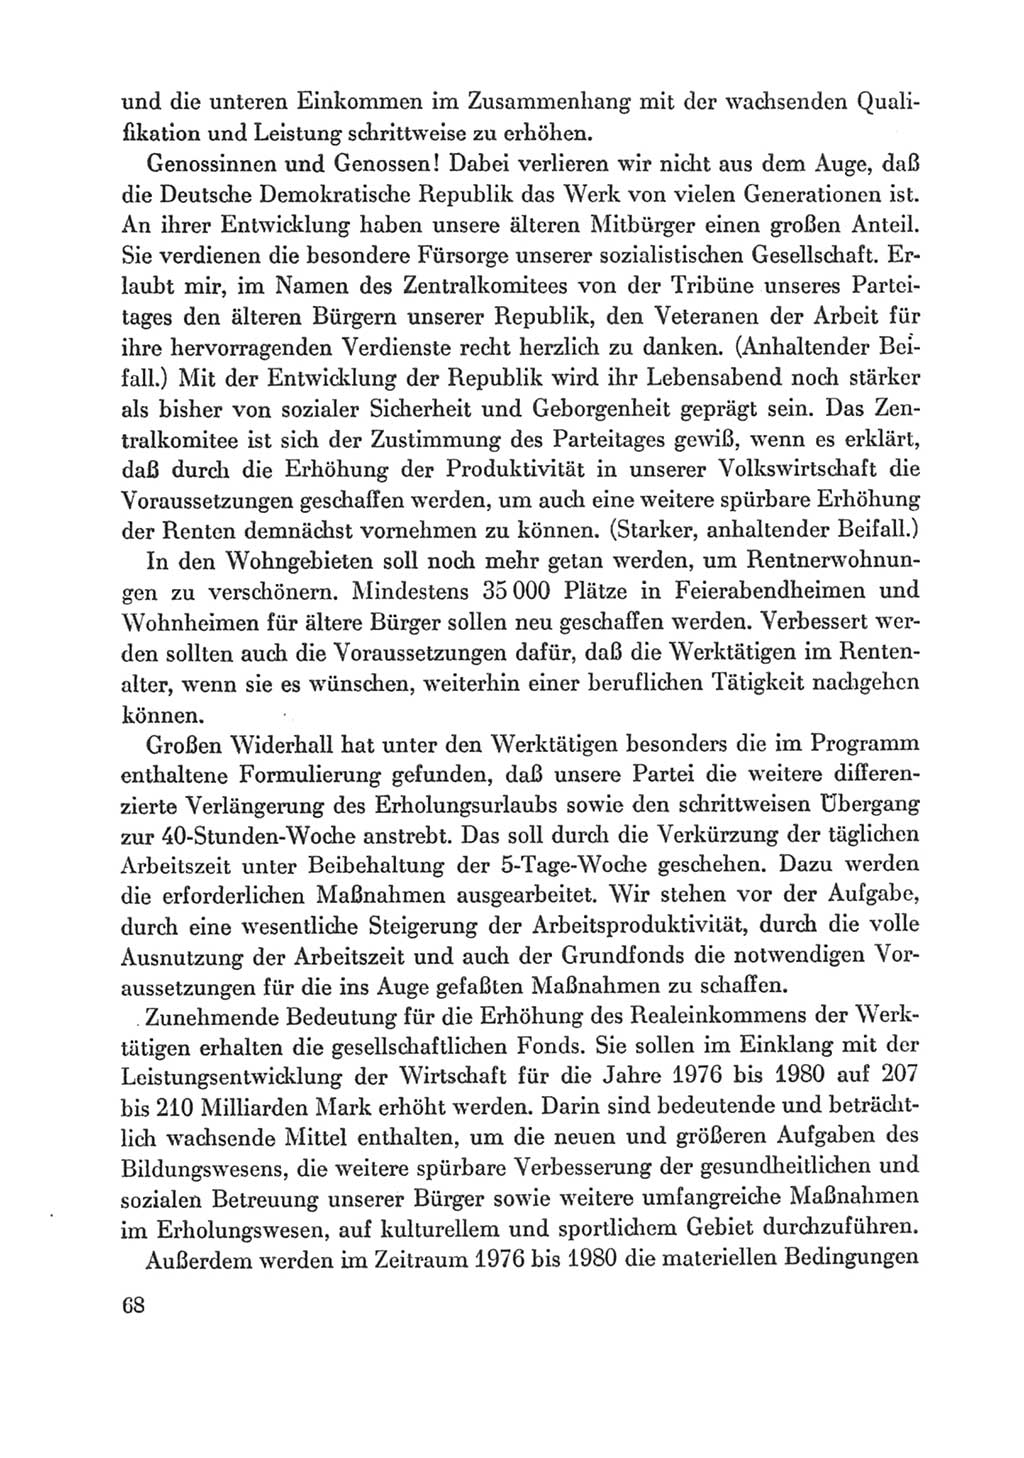 Protokoll der Verhandlungen des Ⅸ. Parteitages der Sozialistischen Einheitspartei Deutschlands (SED) [Deutsche Demokratische Republik (DDR)] 1976, Band 1, Seite 68 (Prot. Verh. Ⅸ. PT SED DDR 1976, Bd. 1, S. 68)